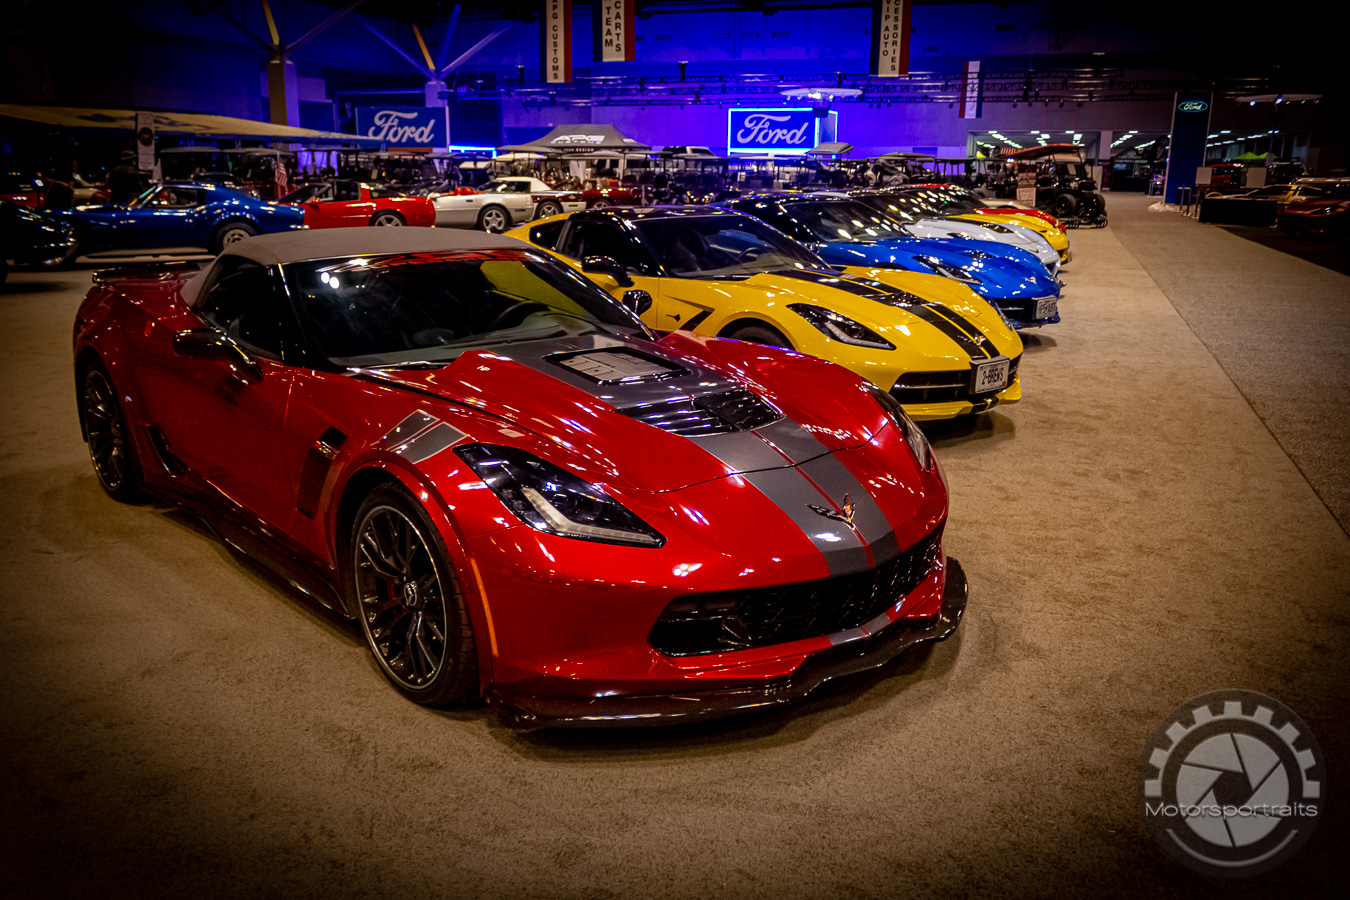 St. Louis Auto Show - Corvette Club - Motorsportraits